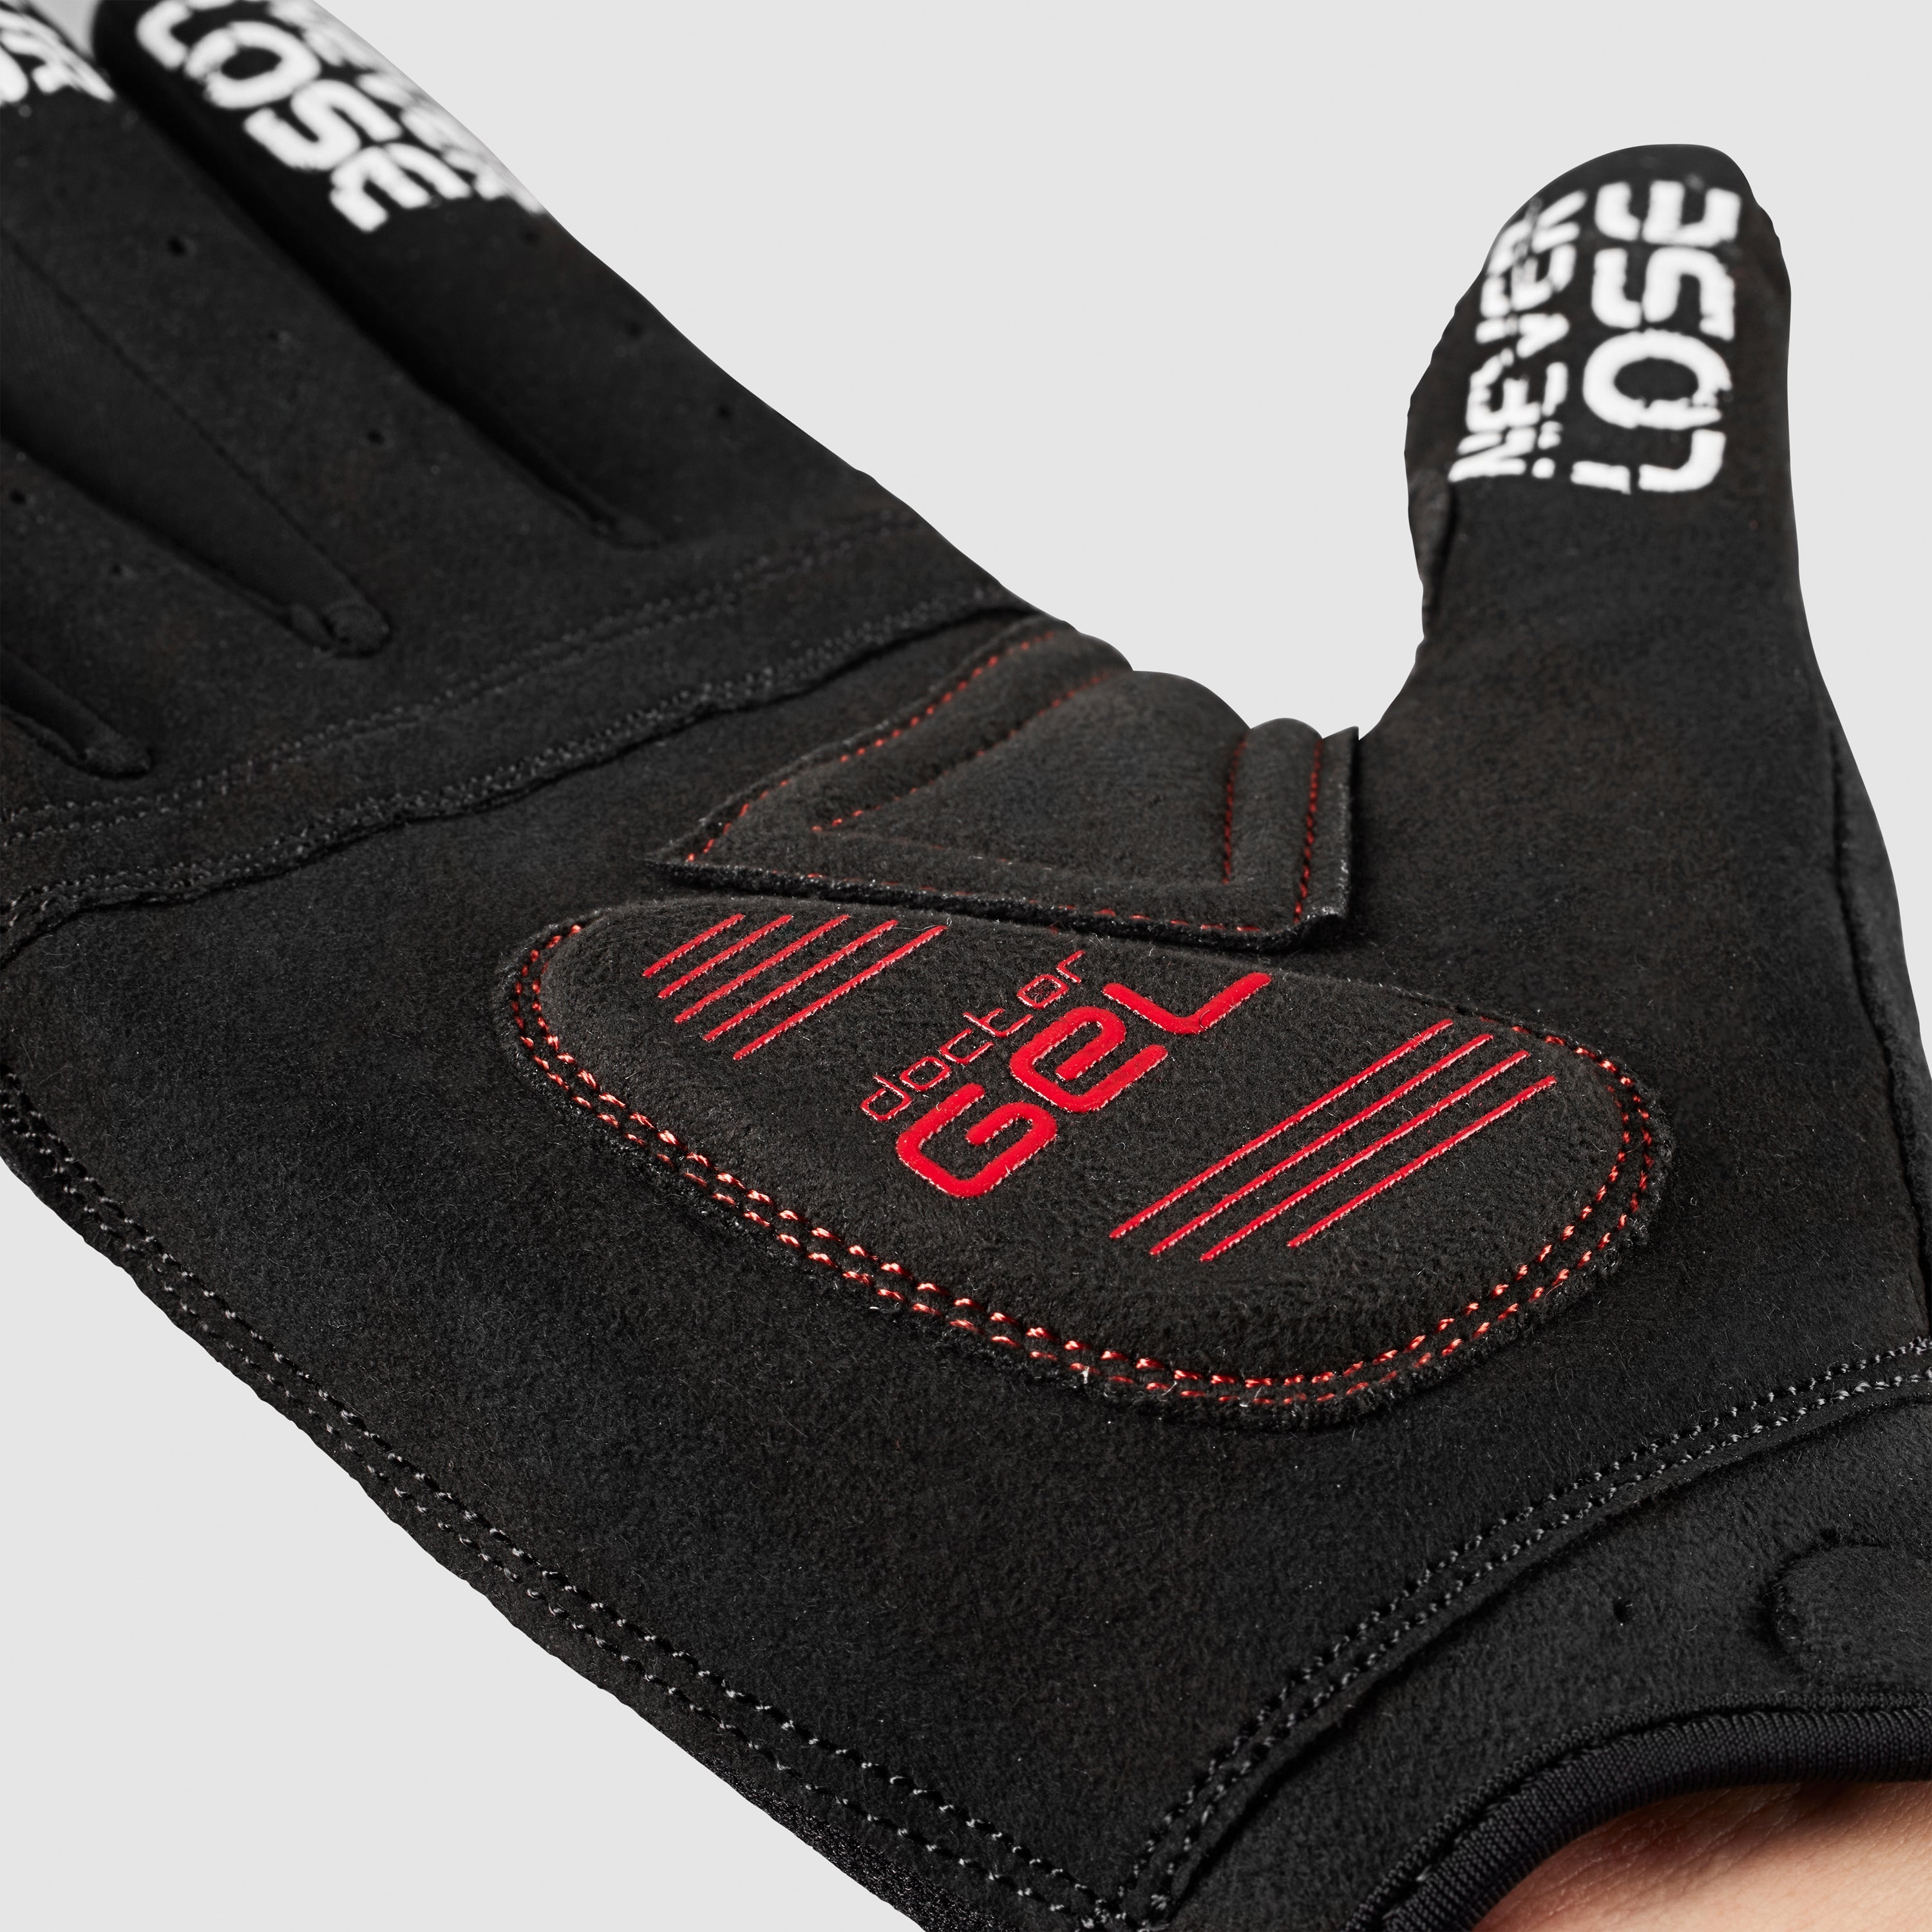 Gripgrab SuperGel XC Padded Full Finger Summer Gloves